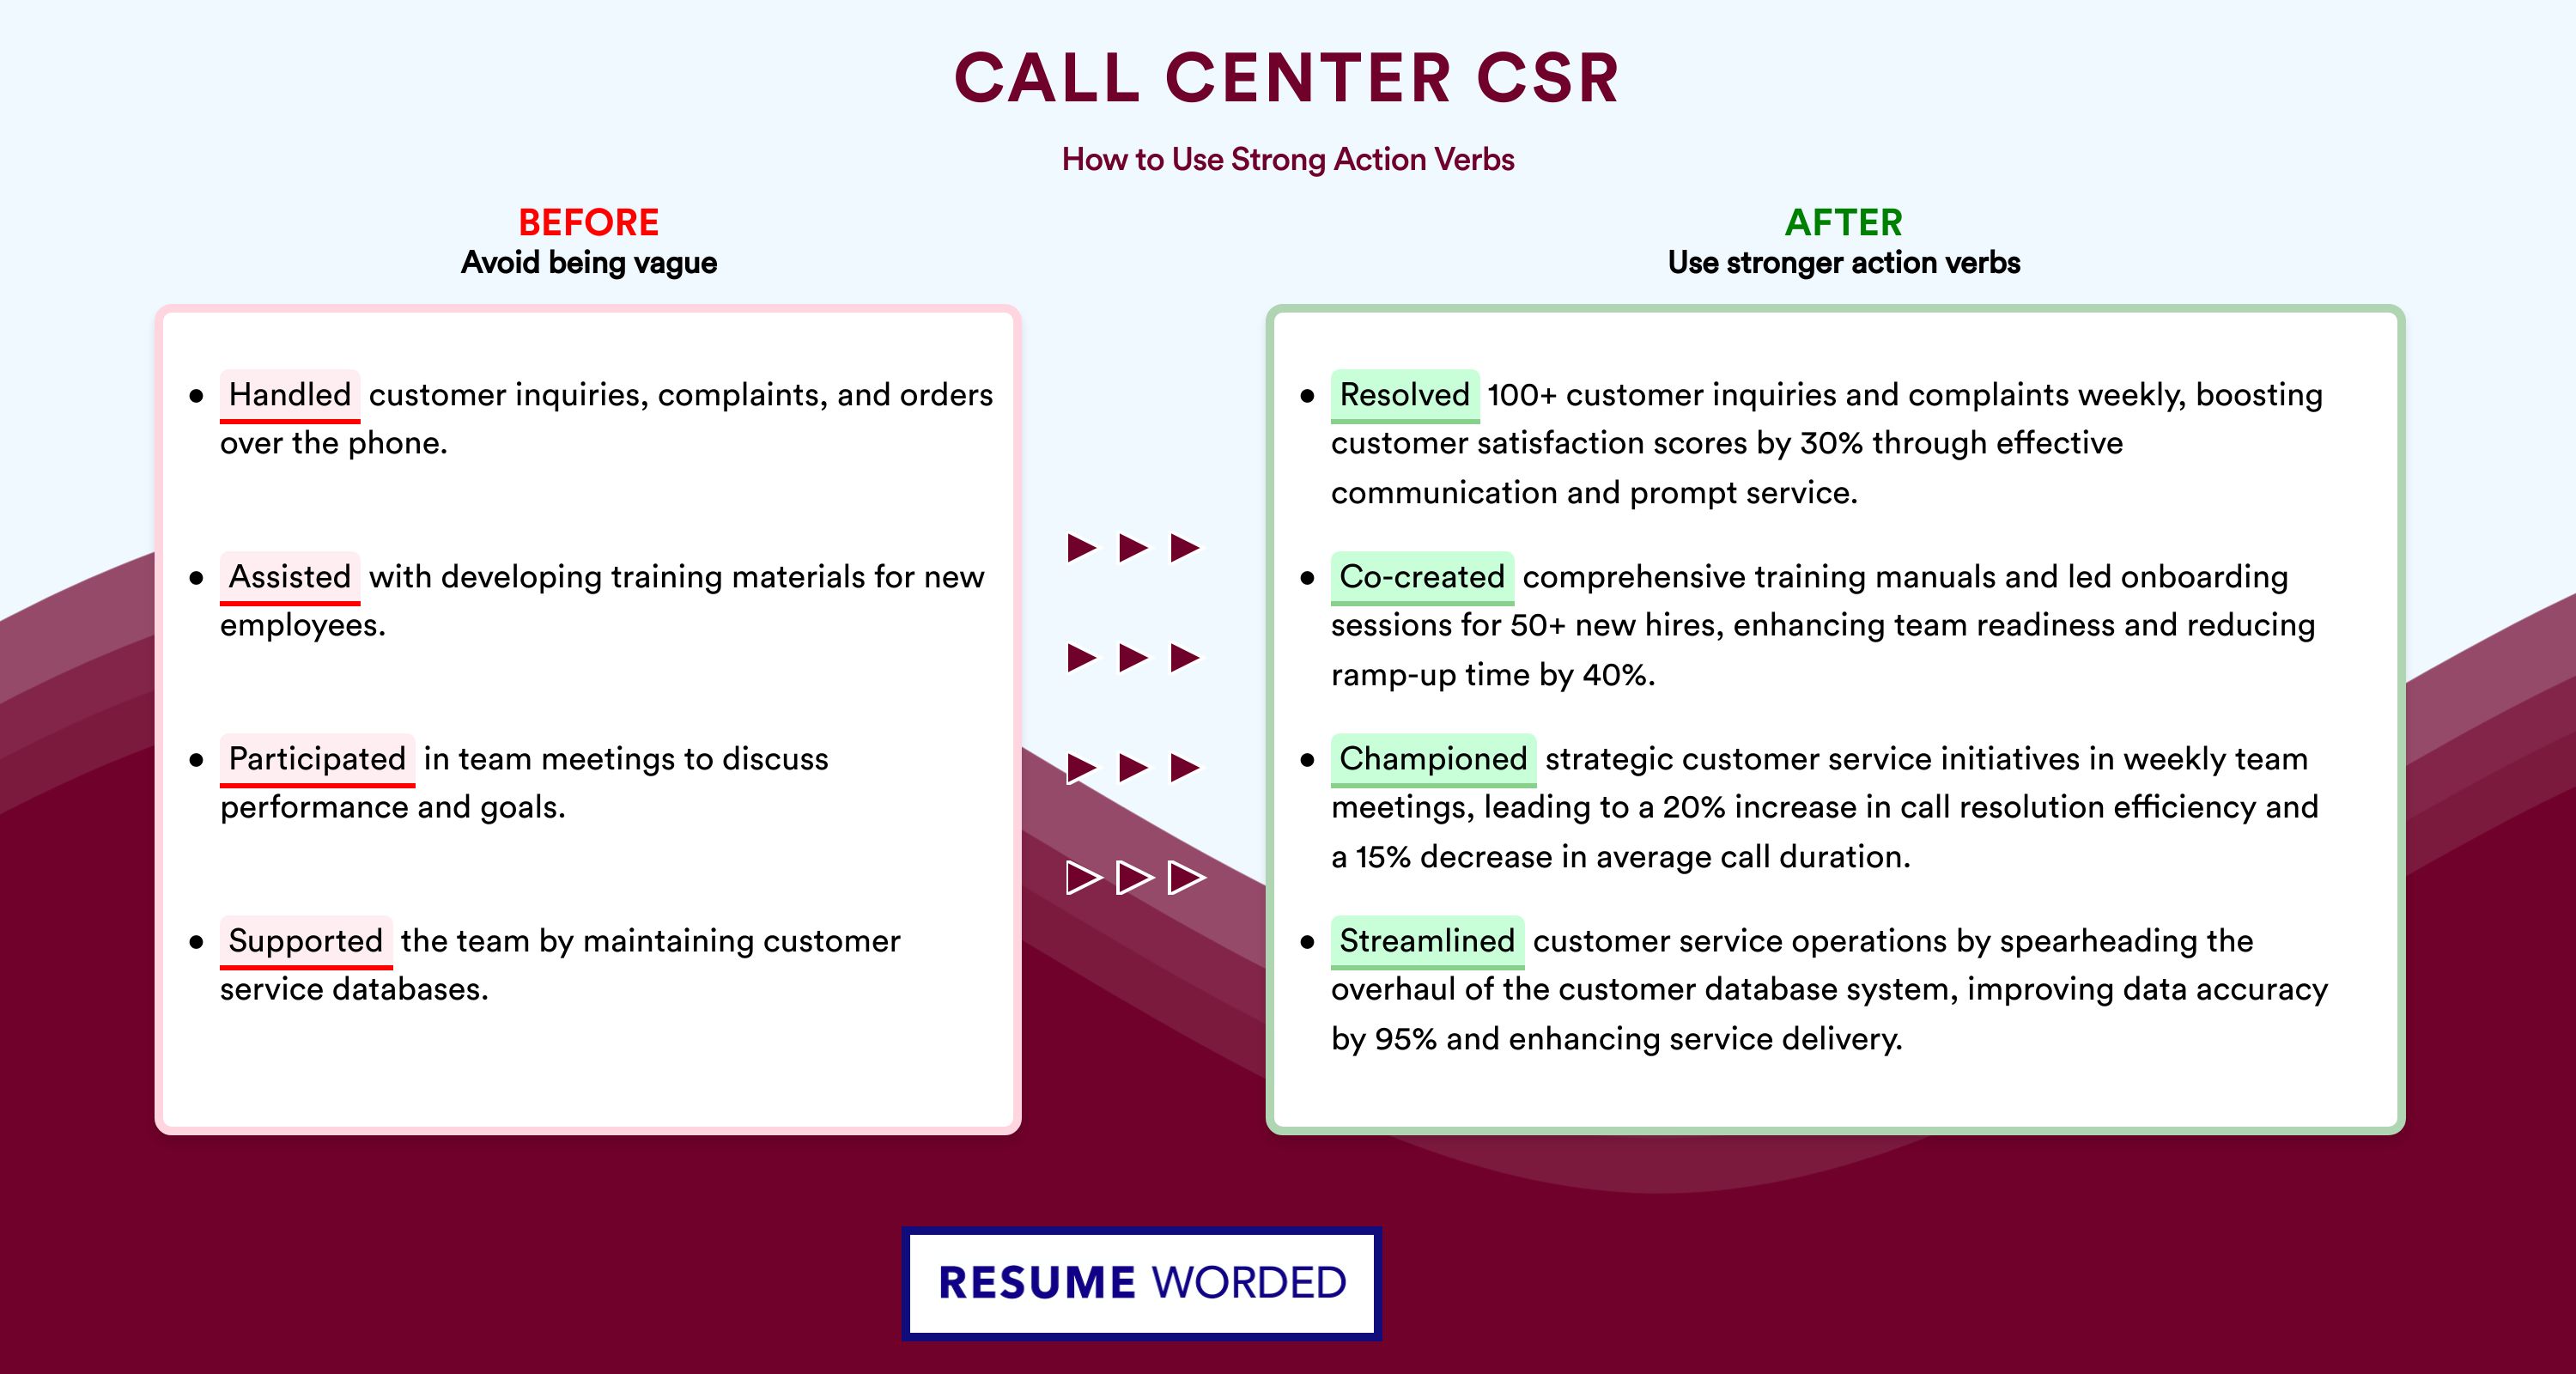 Action Verbs for Call Center CSR